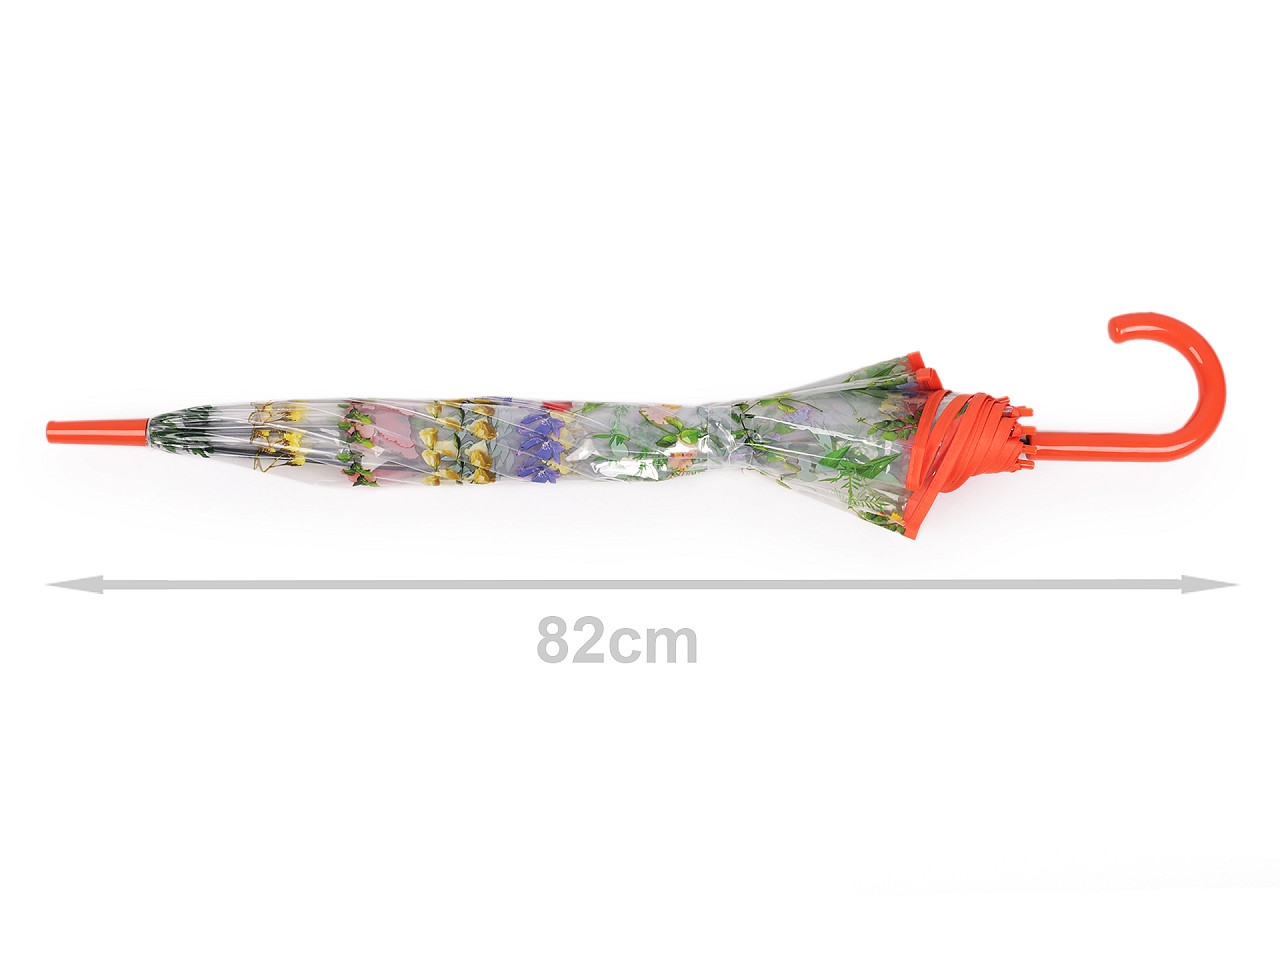 Transparenter Damen-/Mädchen-Regenschirm mit Wiesenblumen, schwarz, 1 Stück